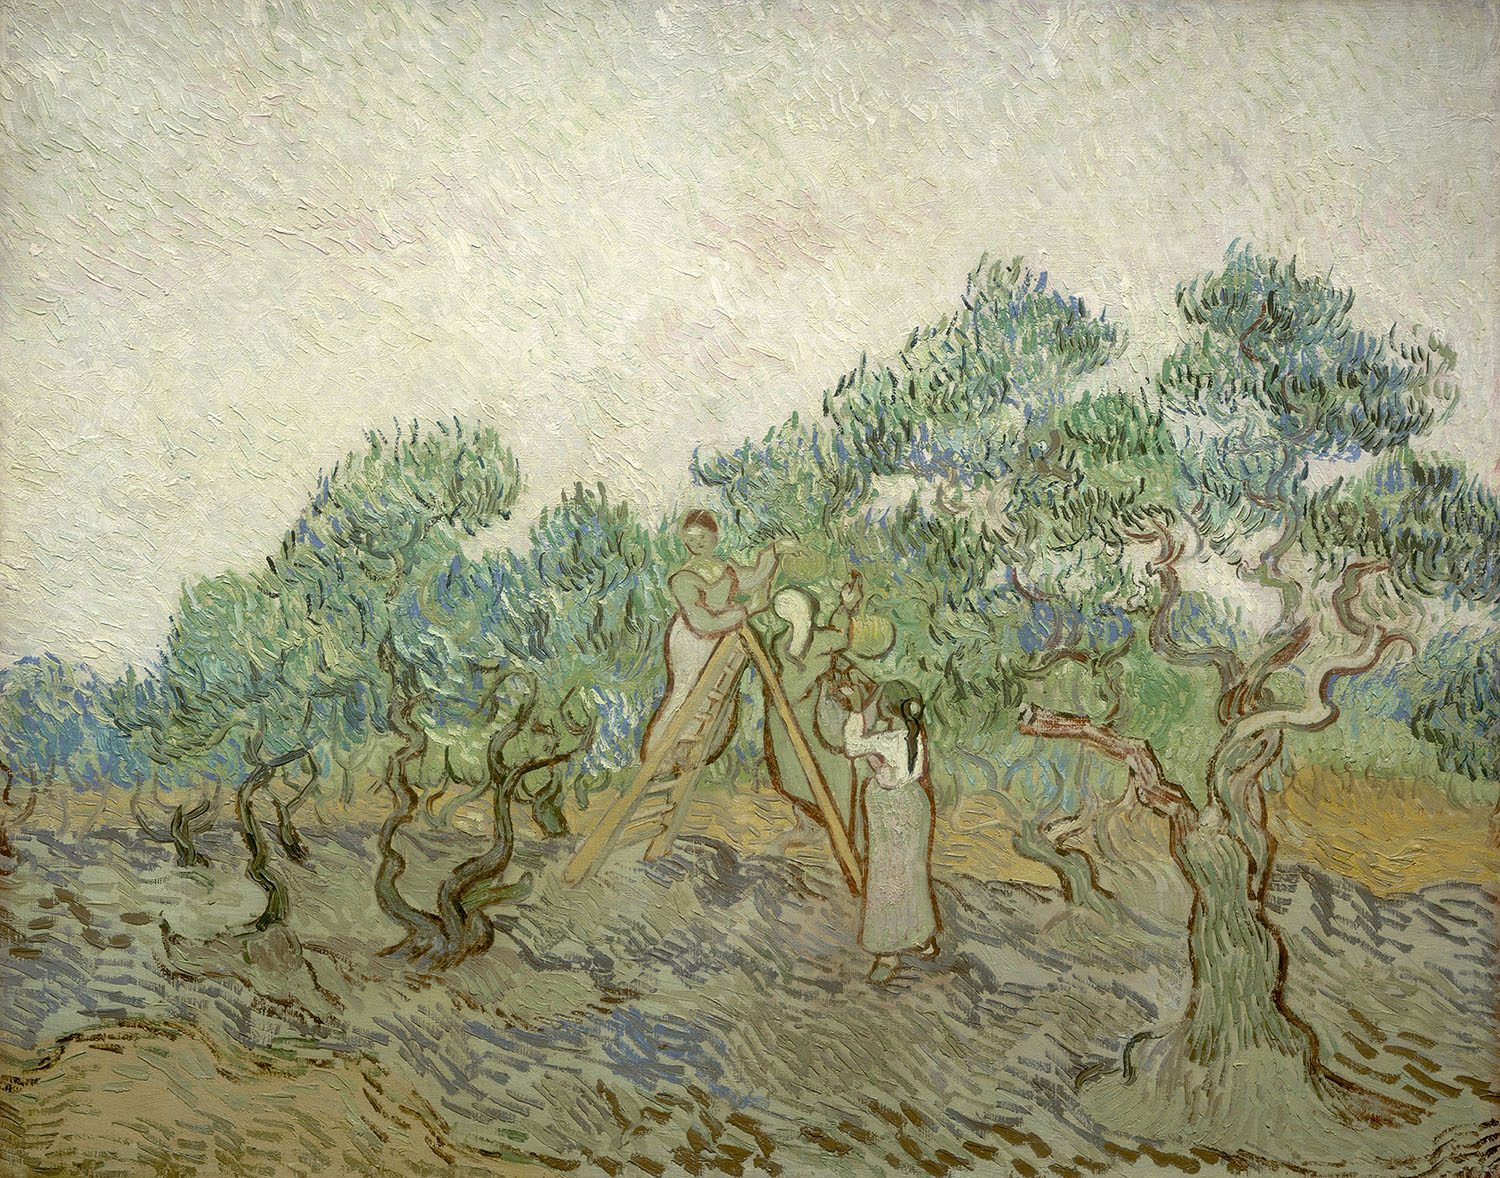 Винсент Ван Гог. "Оливковый сад". 1889. Национальная галерея искусств, Вашингтон.